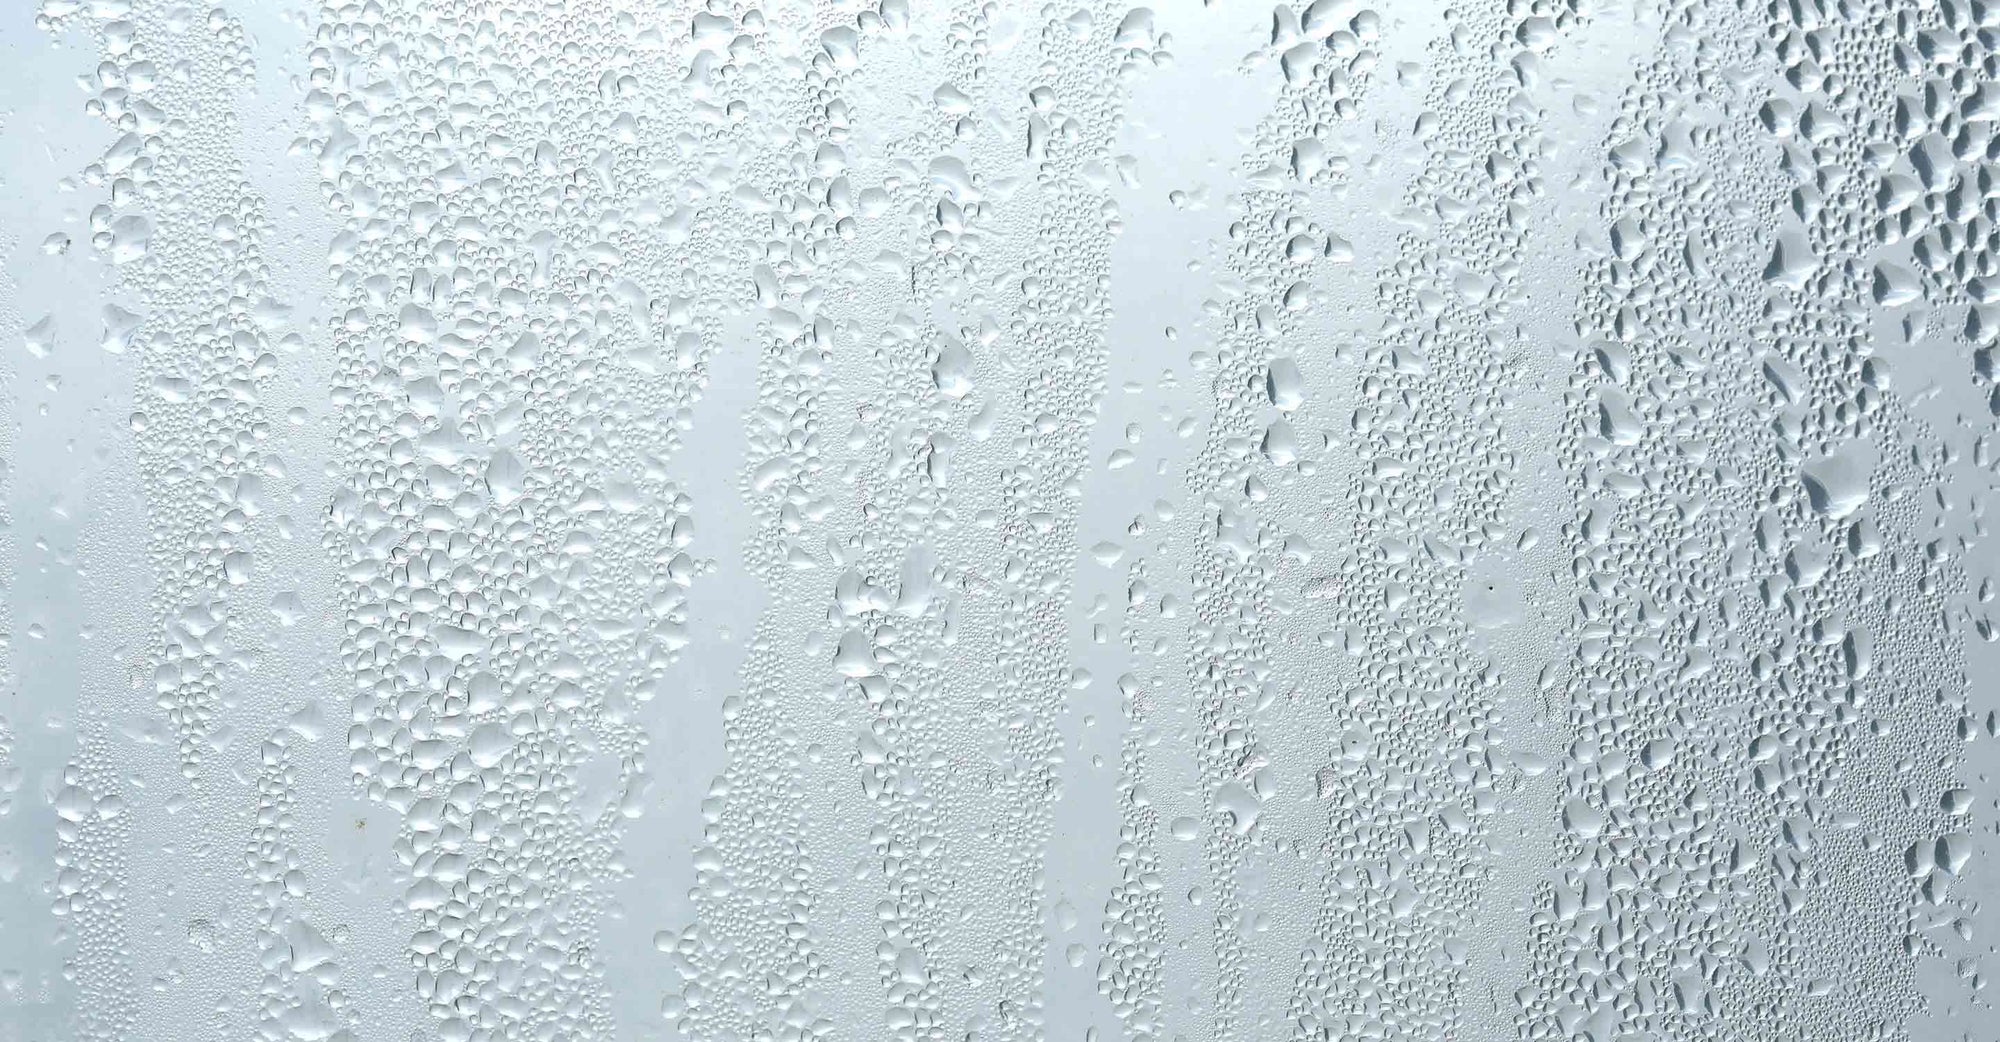 Water droplets on window